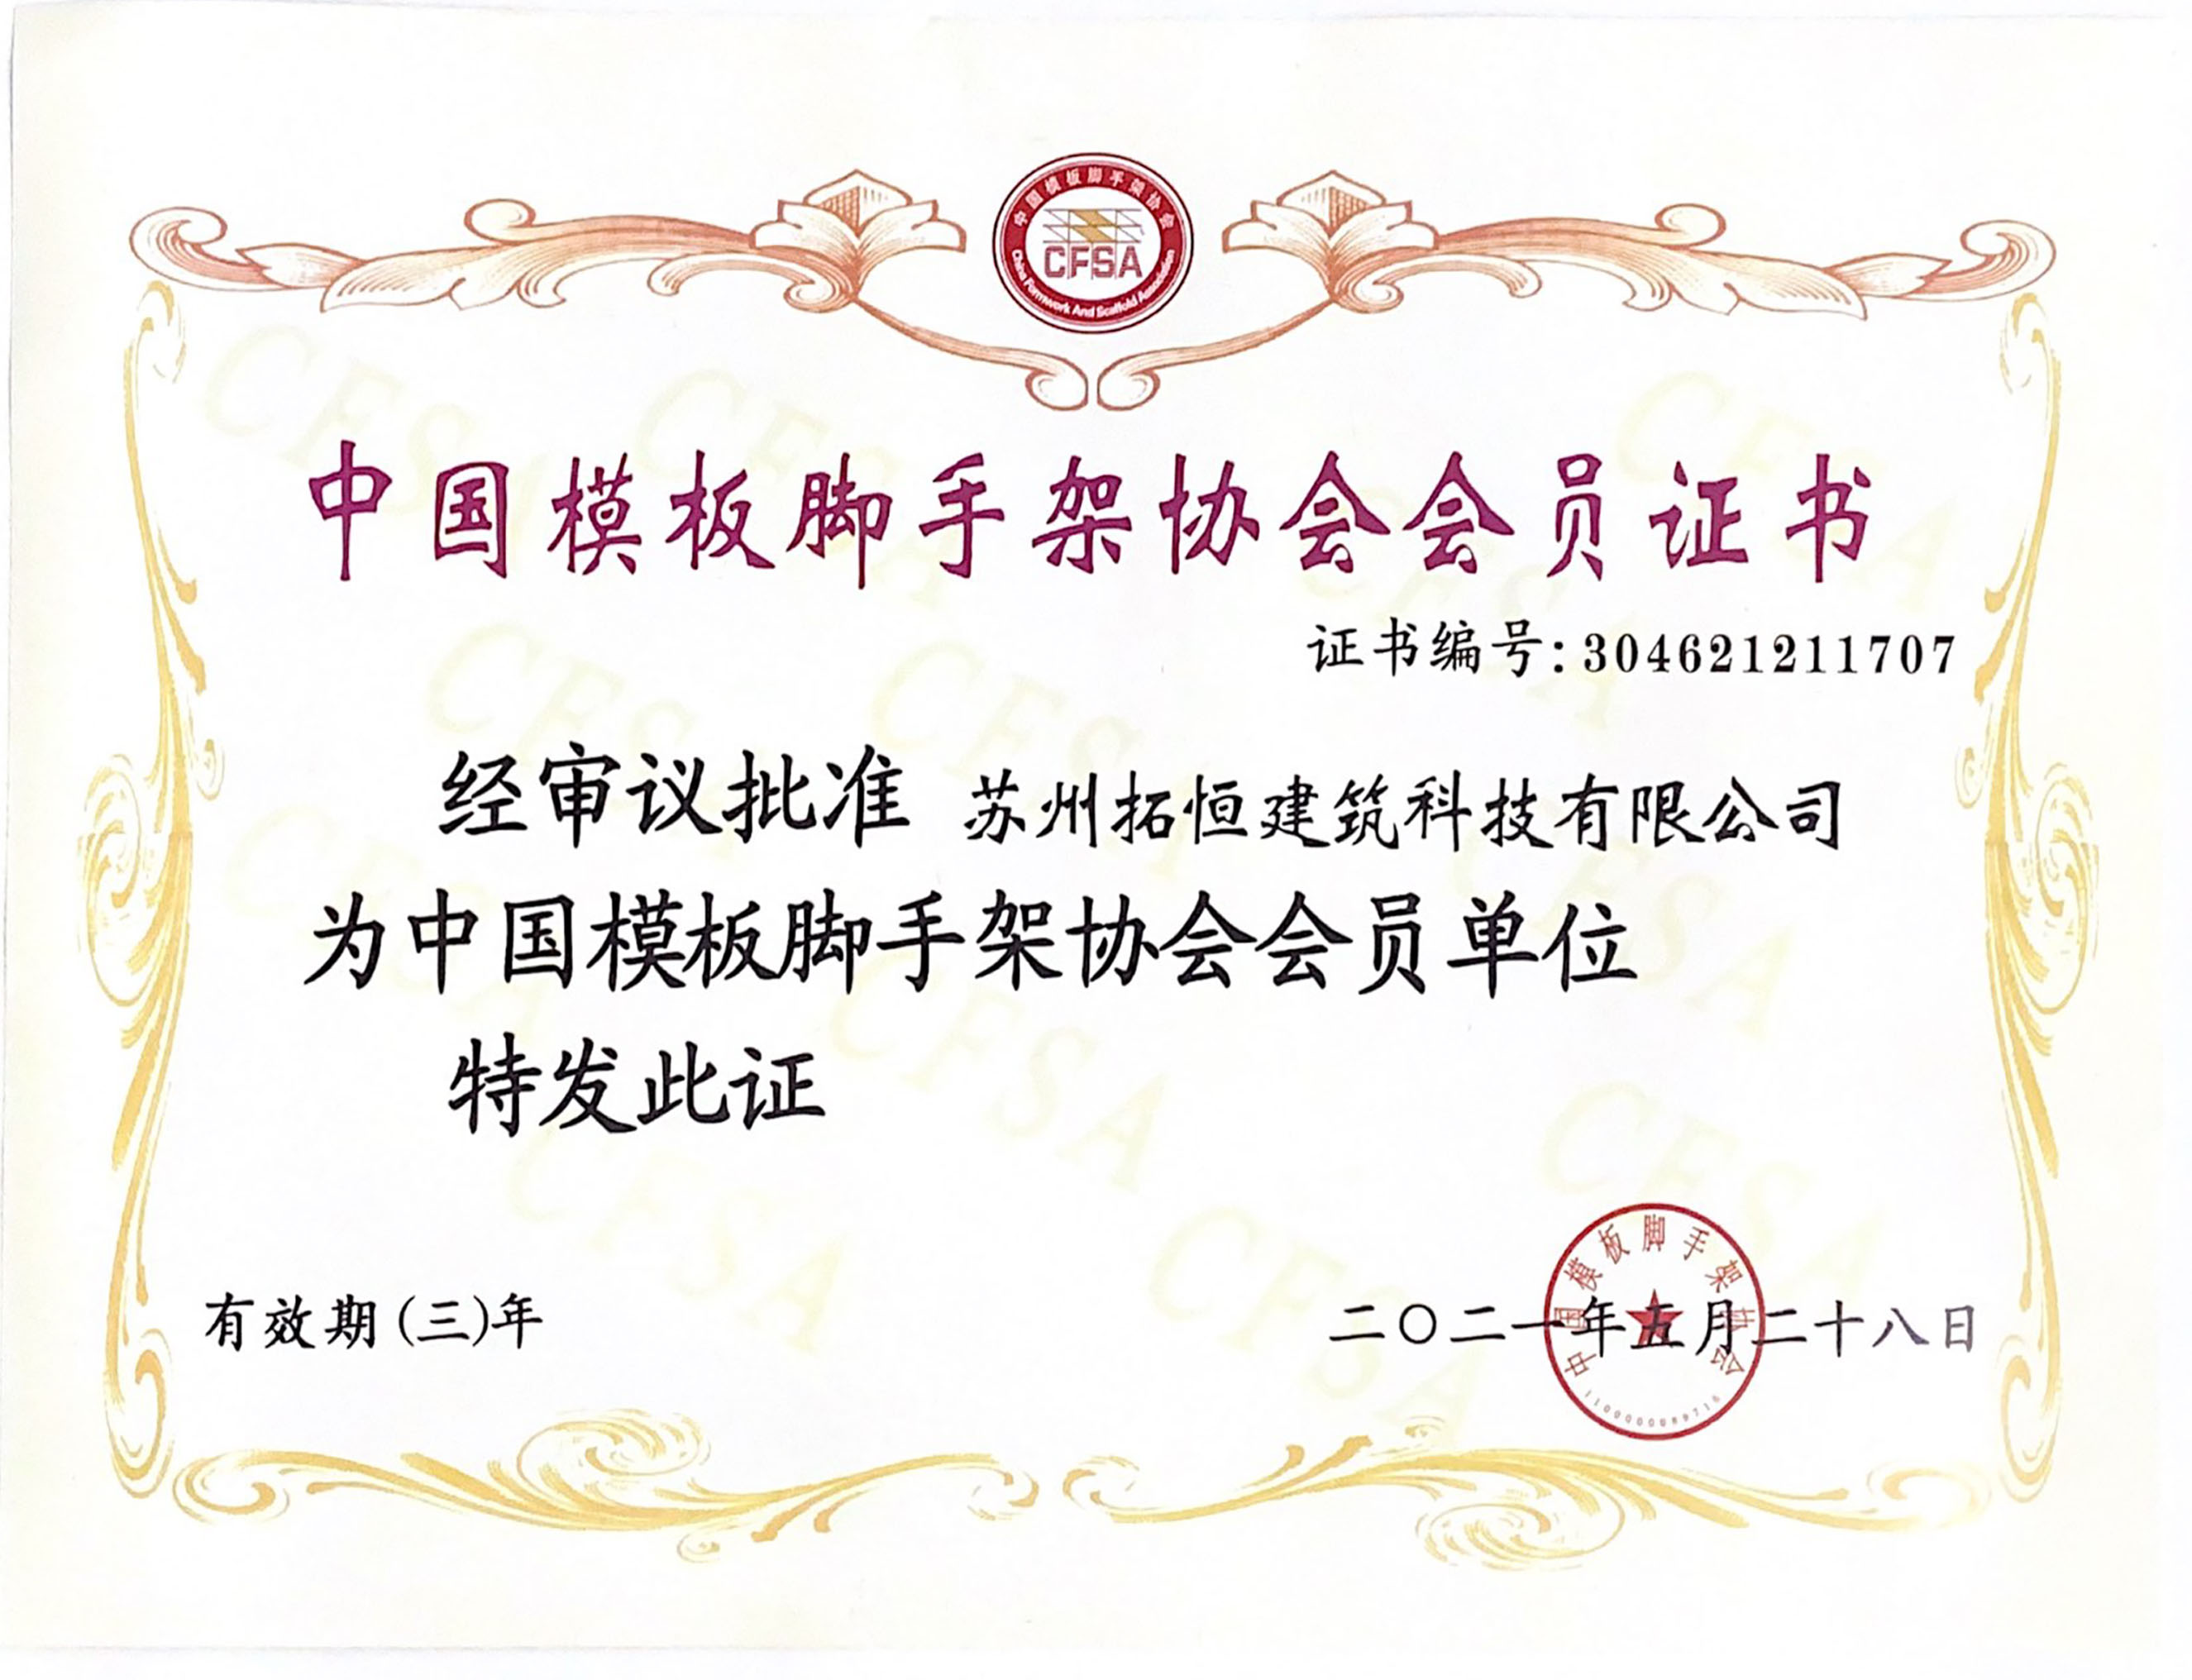 Certificat d'adhésion de l'Association chinoise de coffrage et d'échafaudage